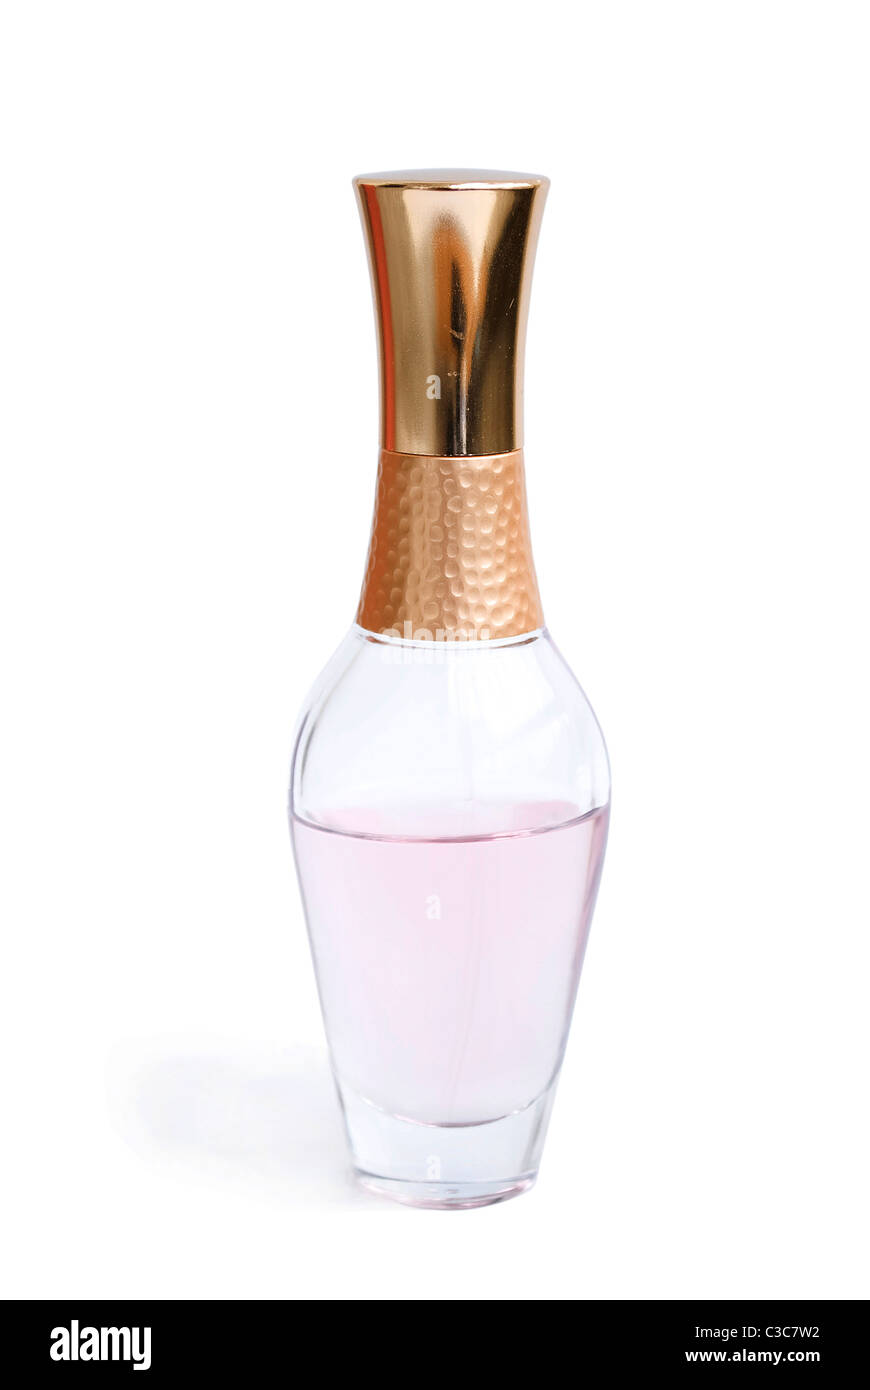 bottle of perfume isolated on white Stock Photo